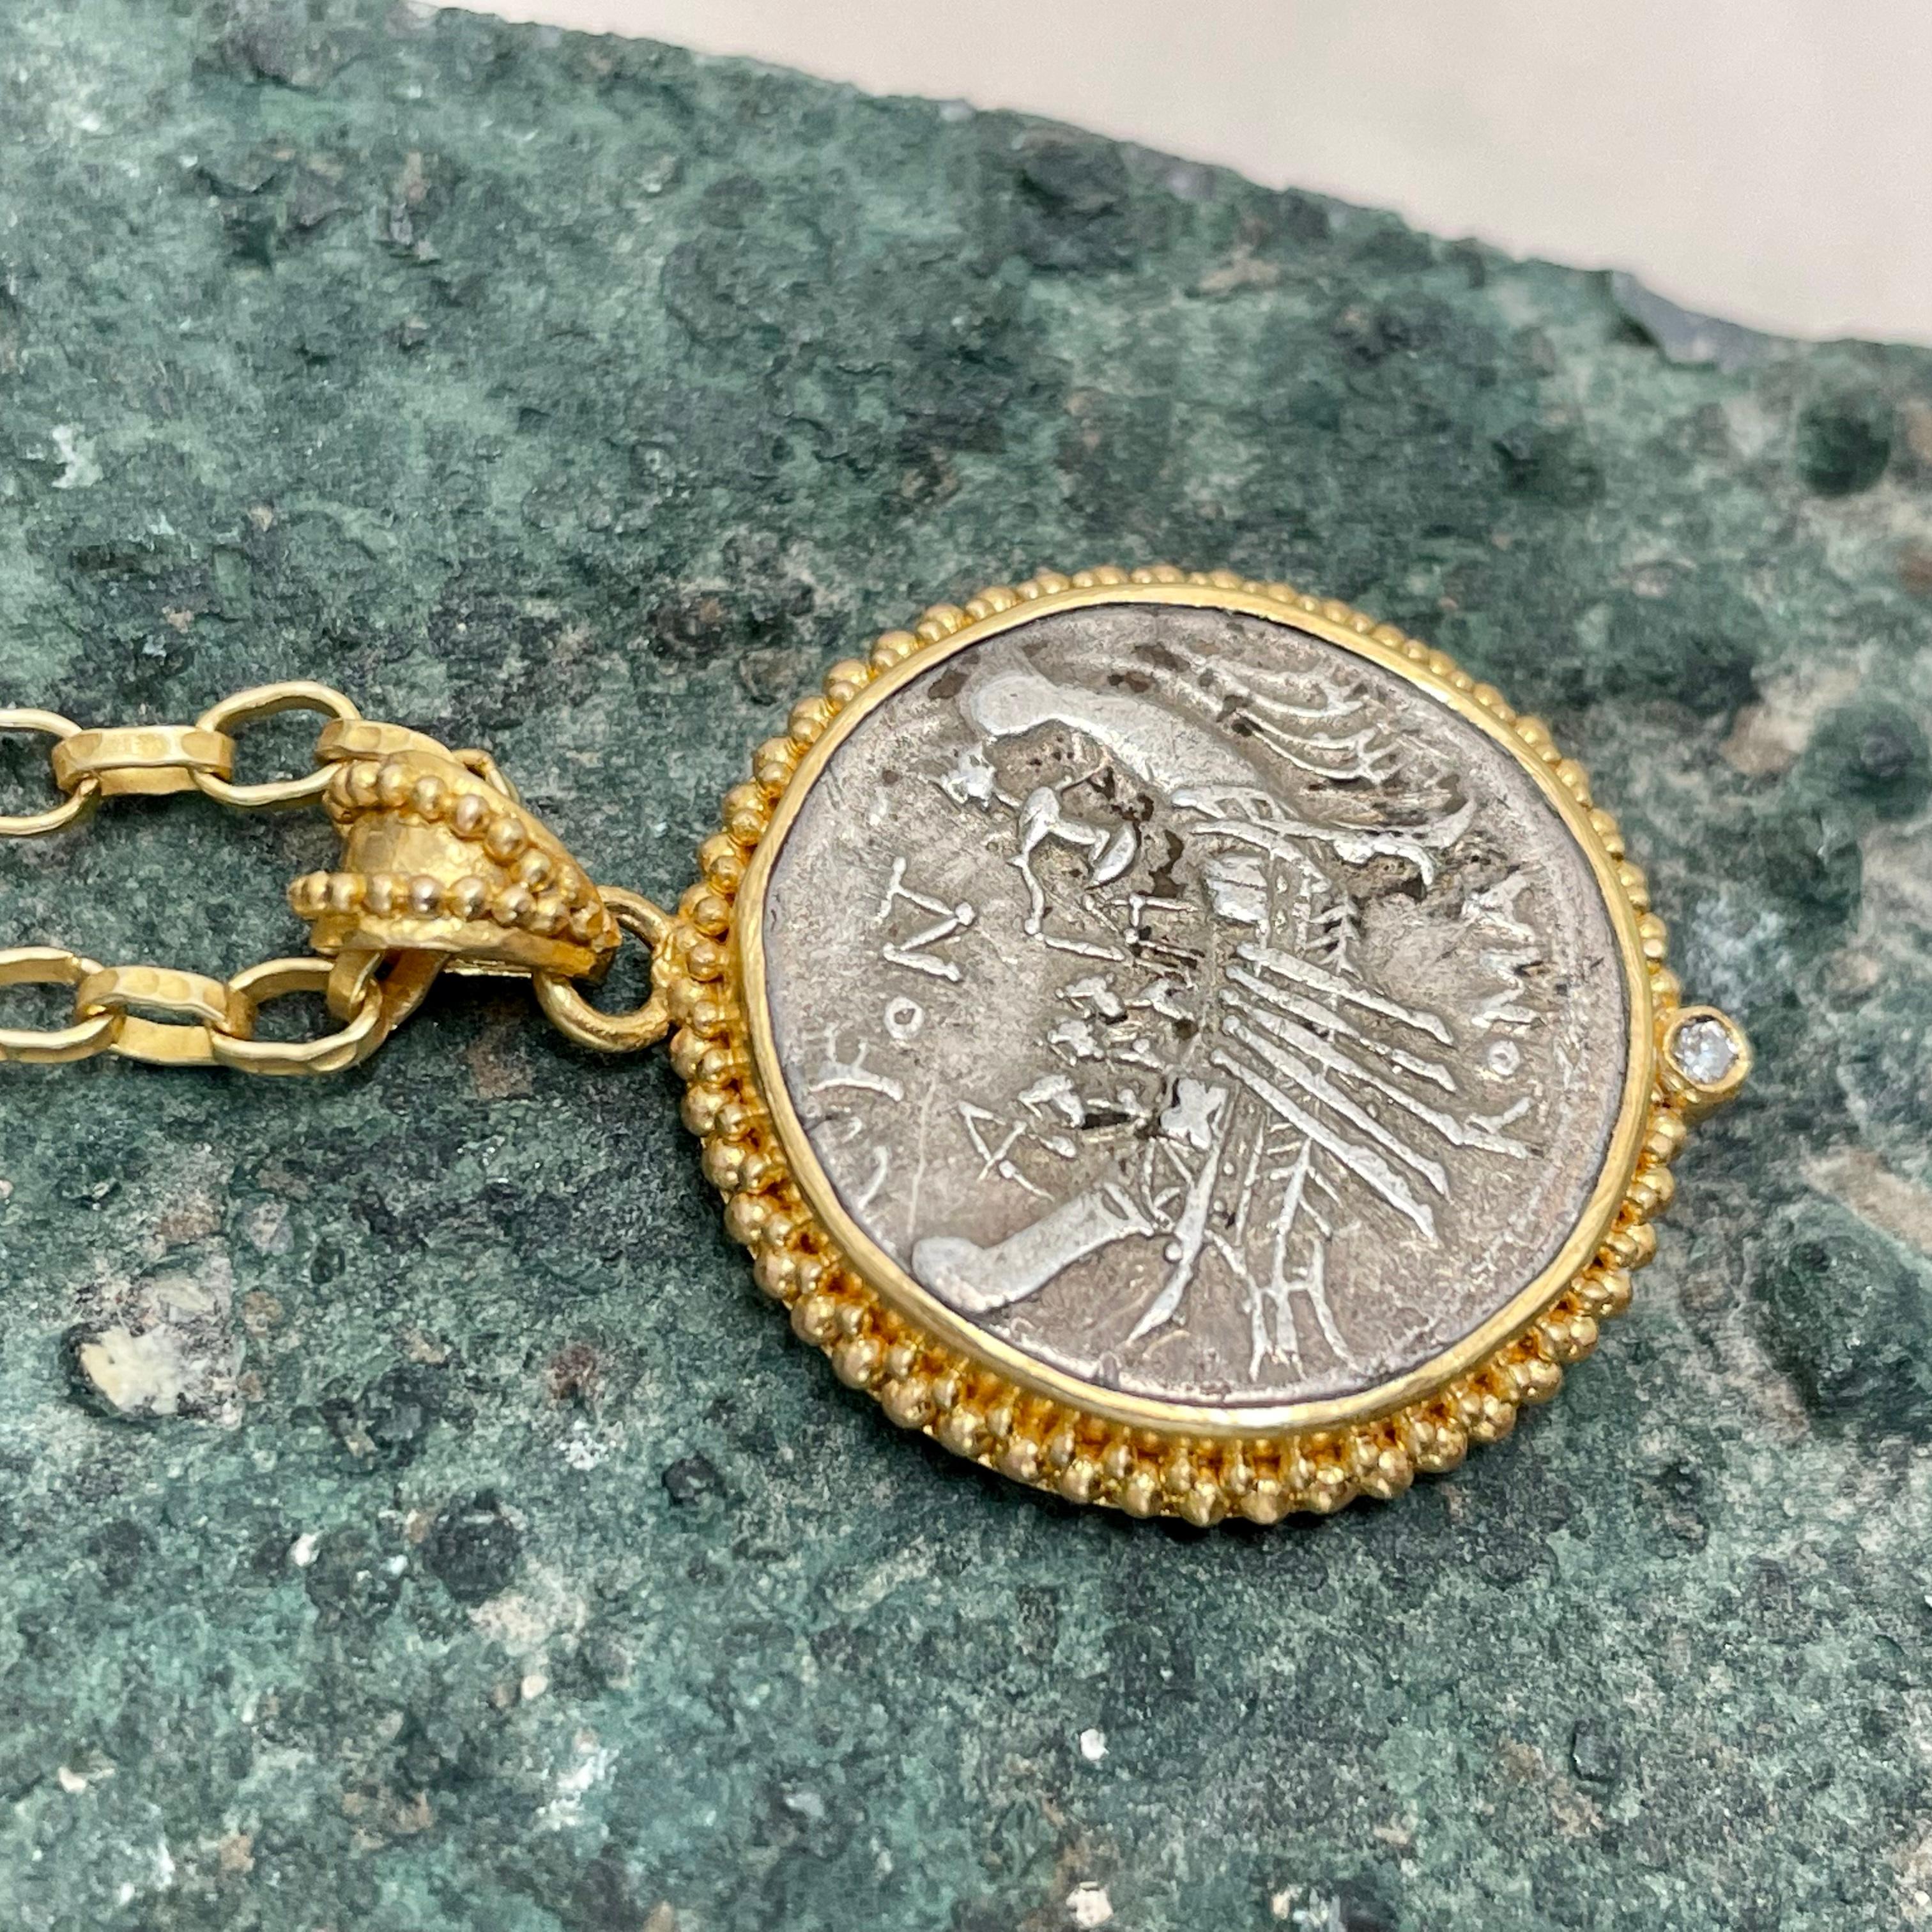 Une intéressante et authentique pièce de monnaie romaine républicaine en argent de 114 av. J.-C., représentant une galère romaine avec des rameurs et un pilote, est sertie dans une monture à lunette granulée 